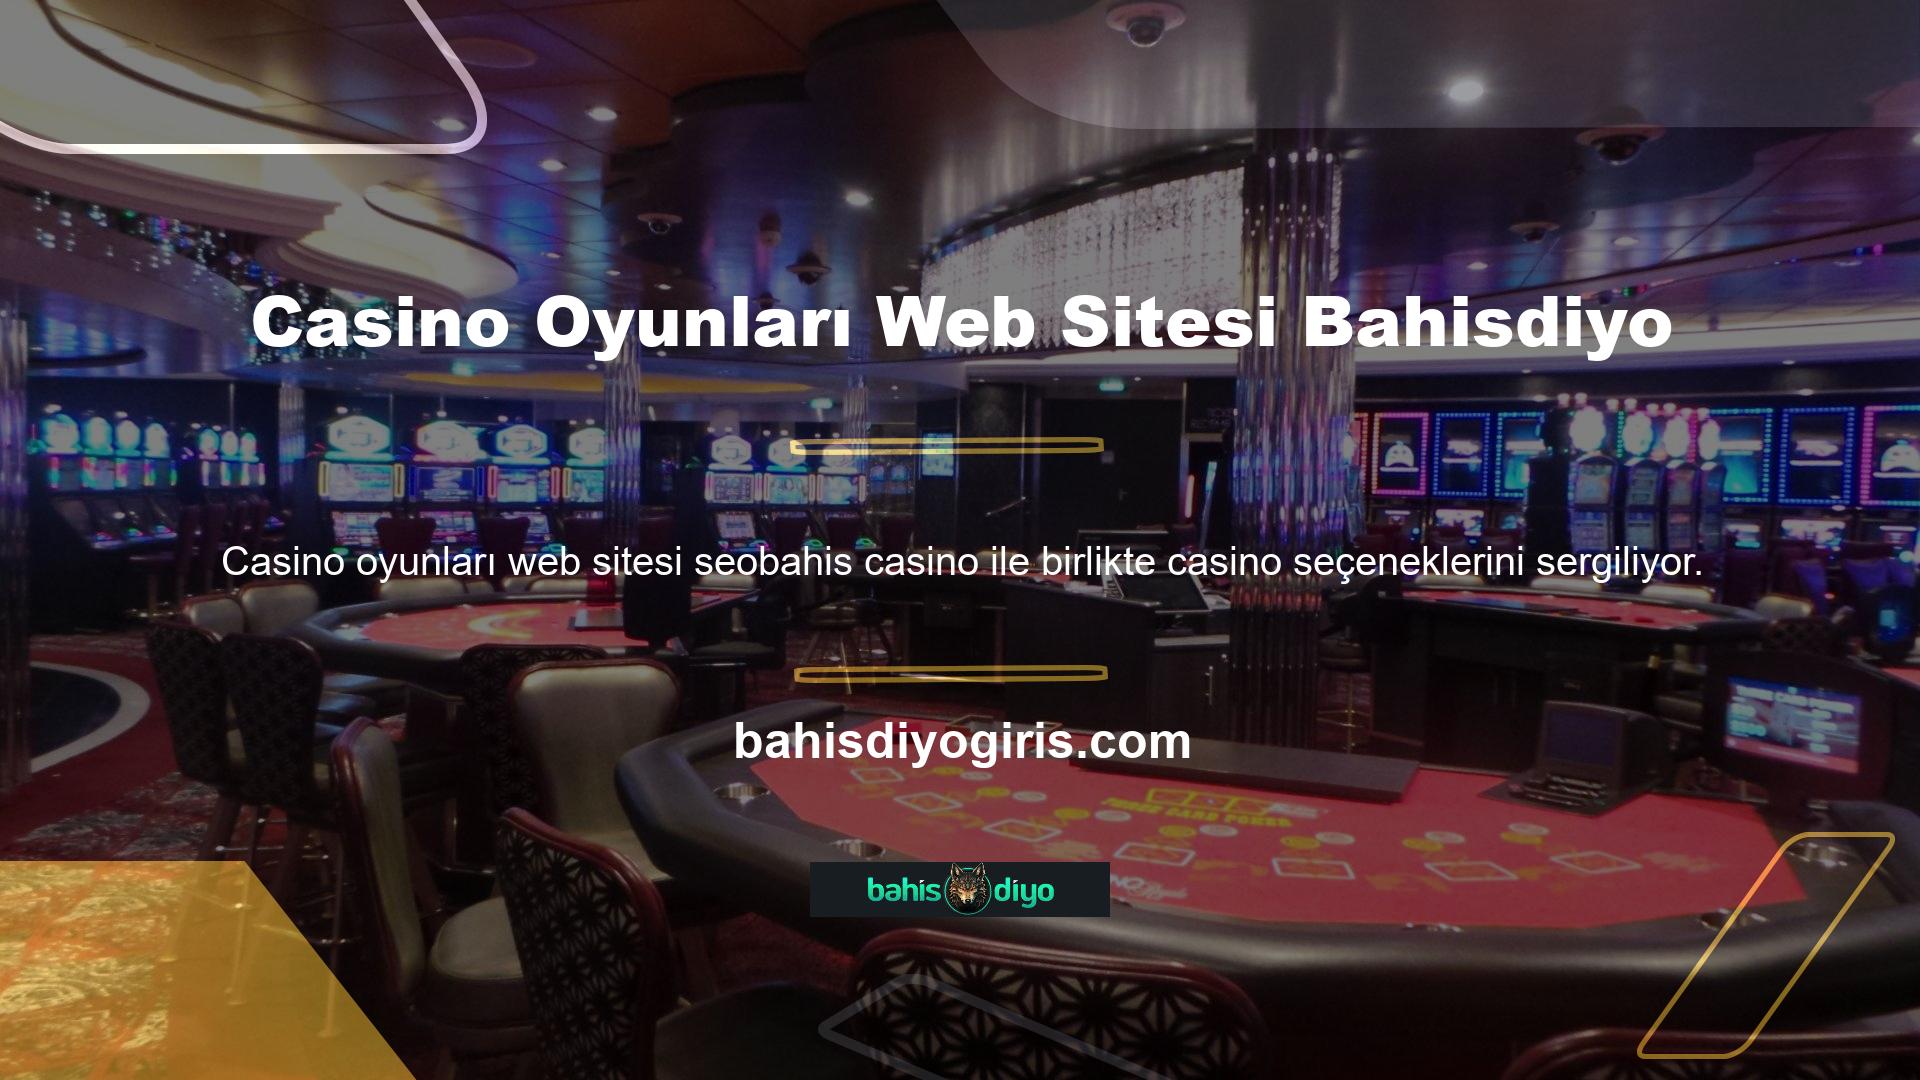 Casino dünyasının bahis meraklıları, en önemli oyun seçeneklerinden biri olarak sıklıkla Bahisdiyo web sitesi casino oyunlarını talep etmektedir